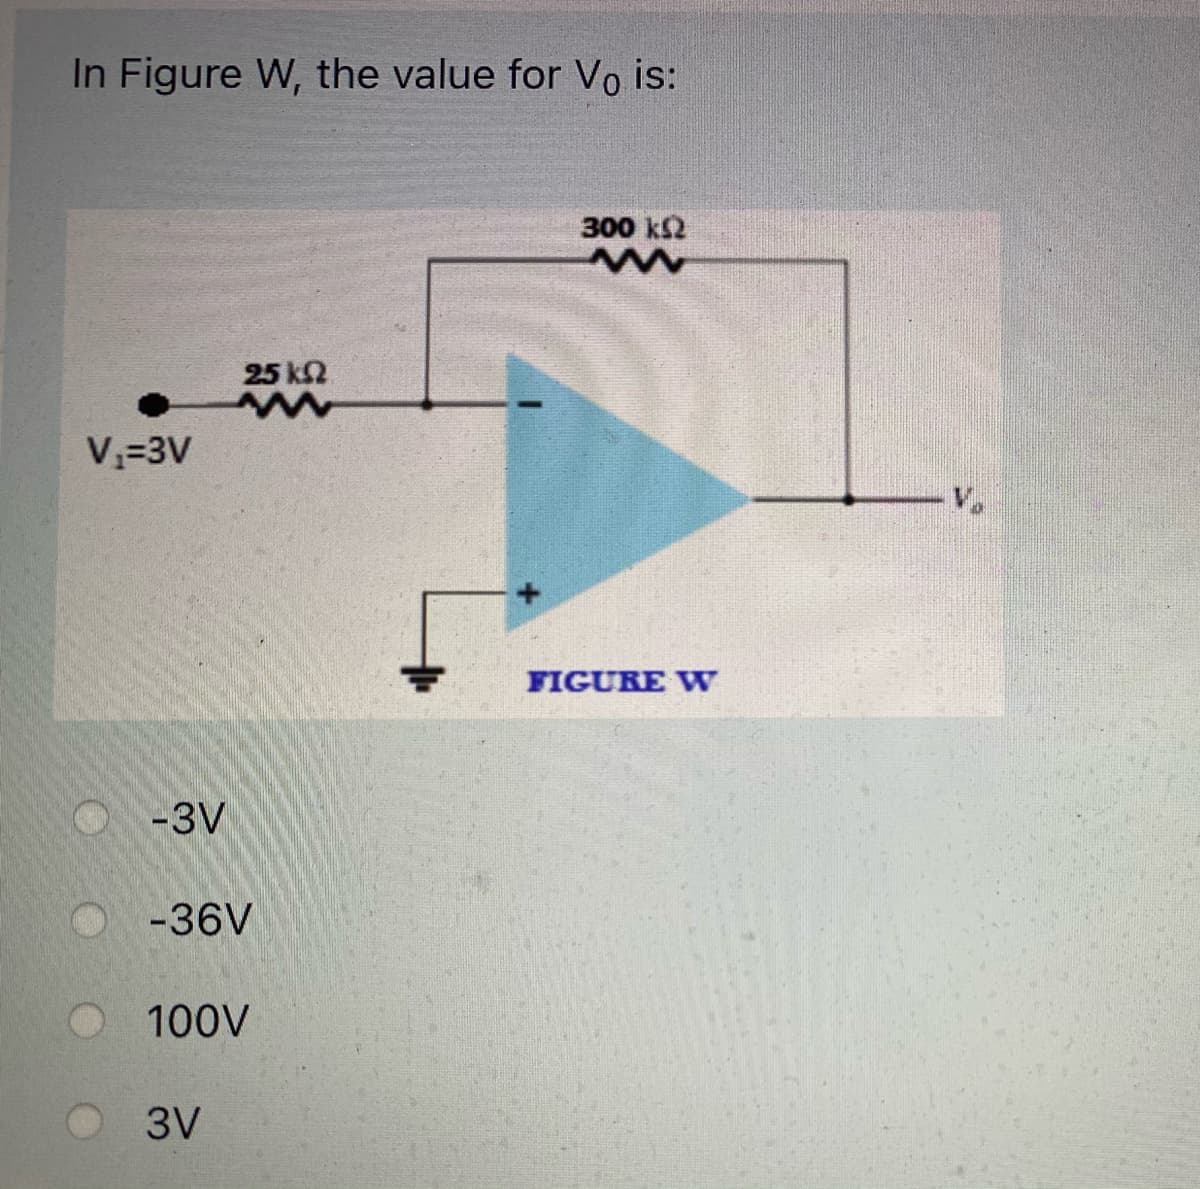 In Figure W, the value for Vo is:
300 k2
25 k2
V=3V
V.
FIGURE W
O-3V
-36V
100V
3V
